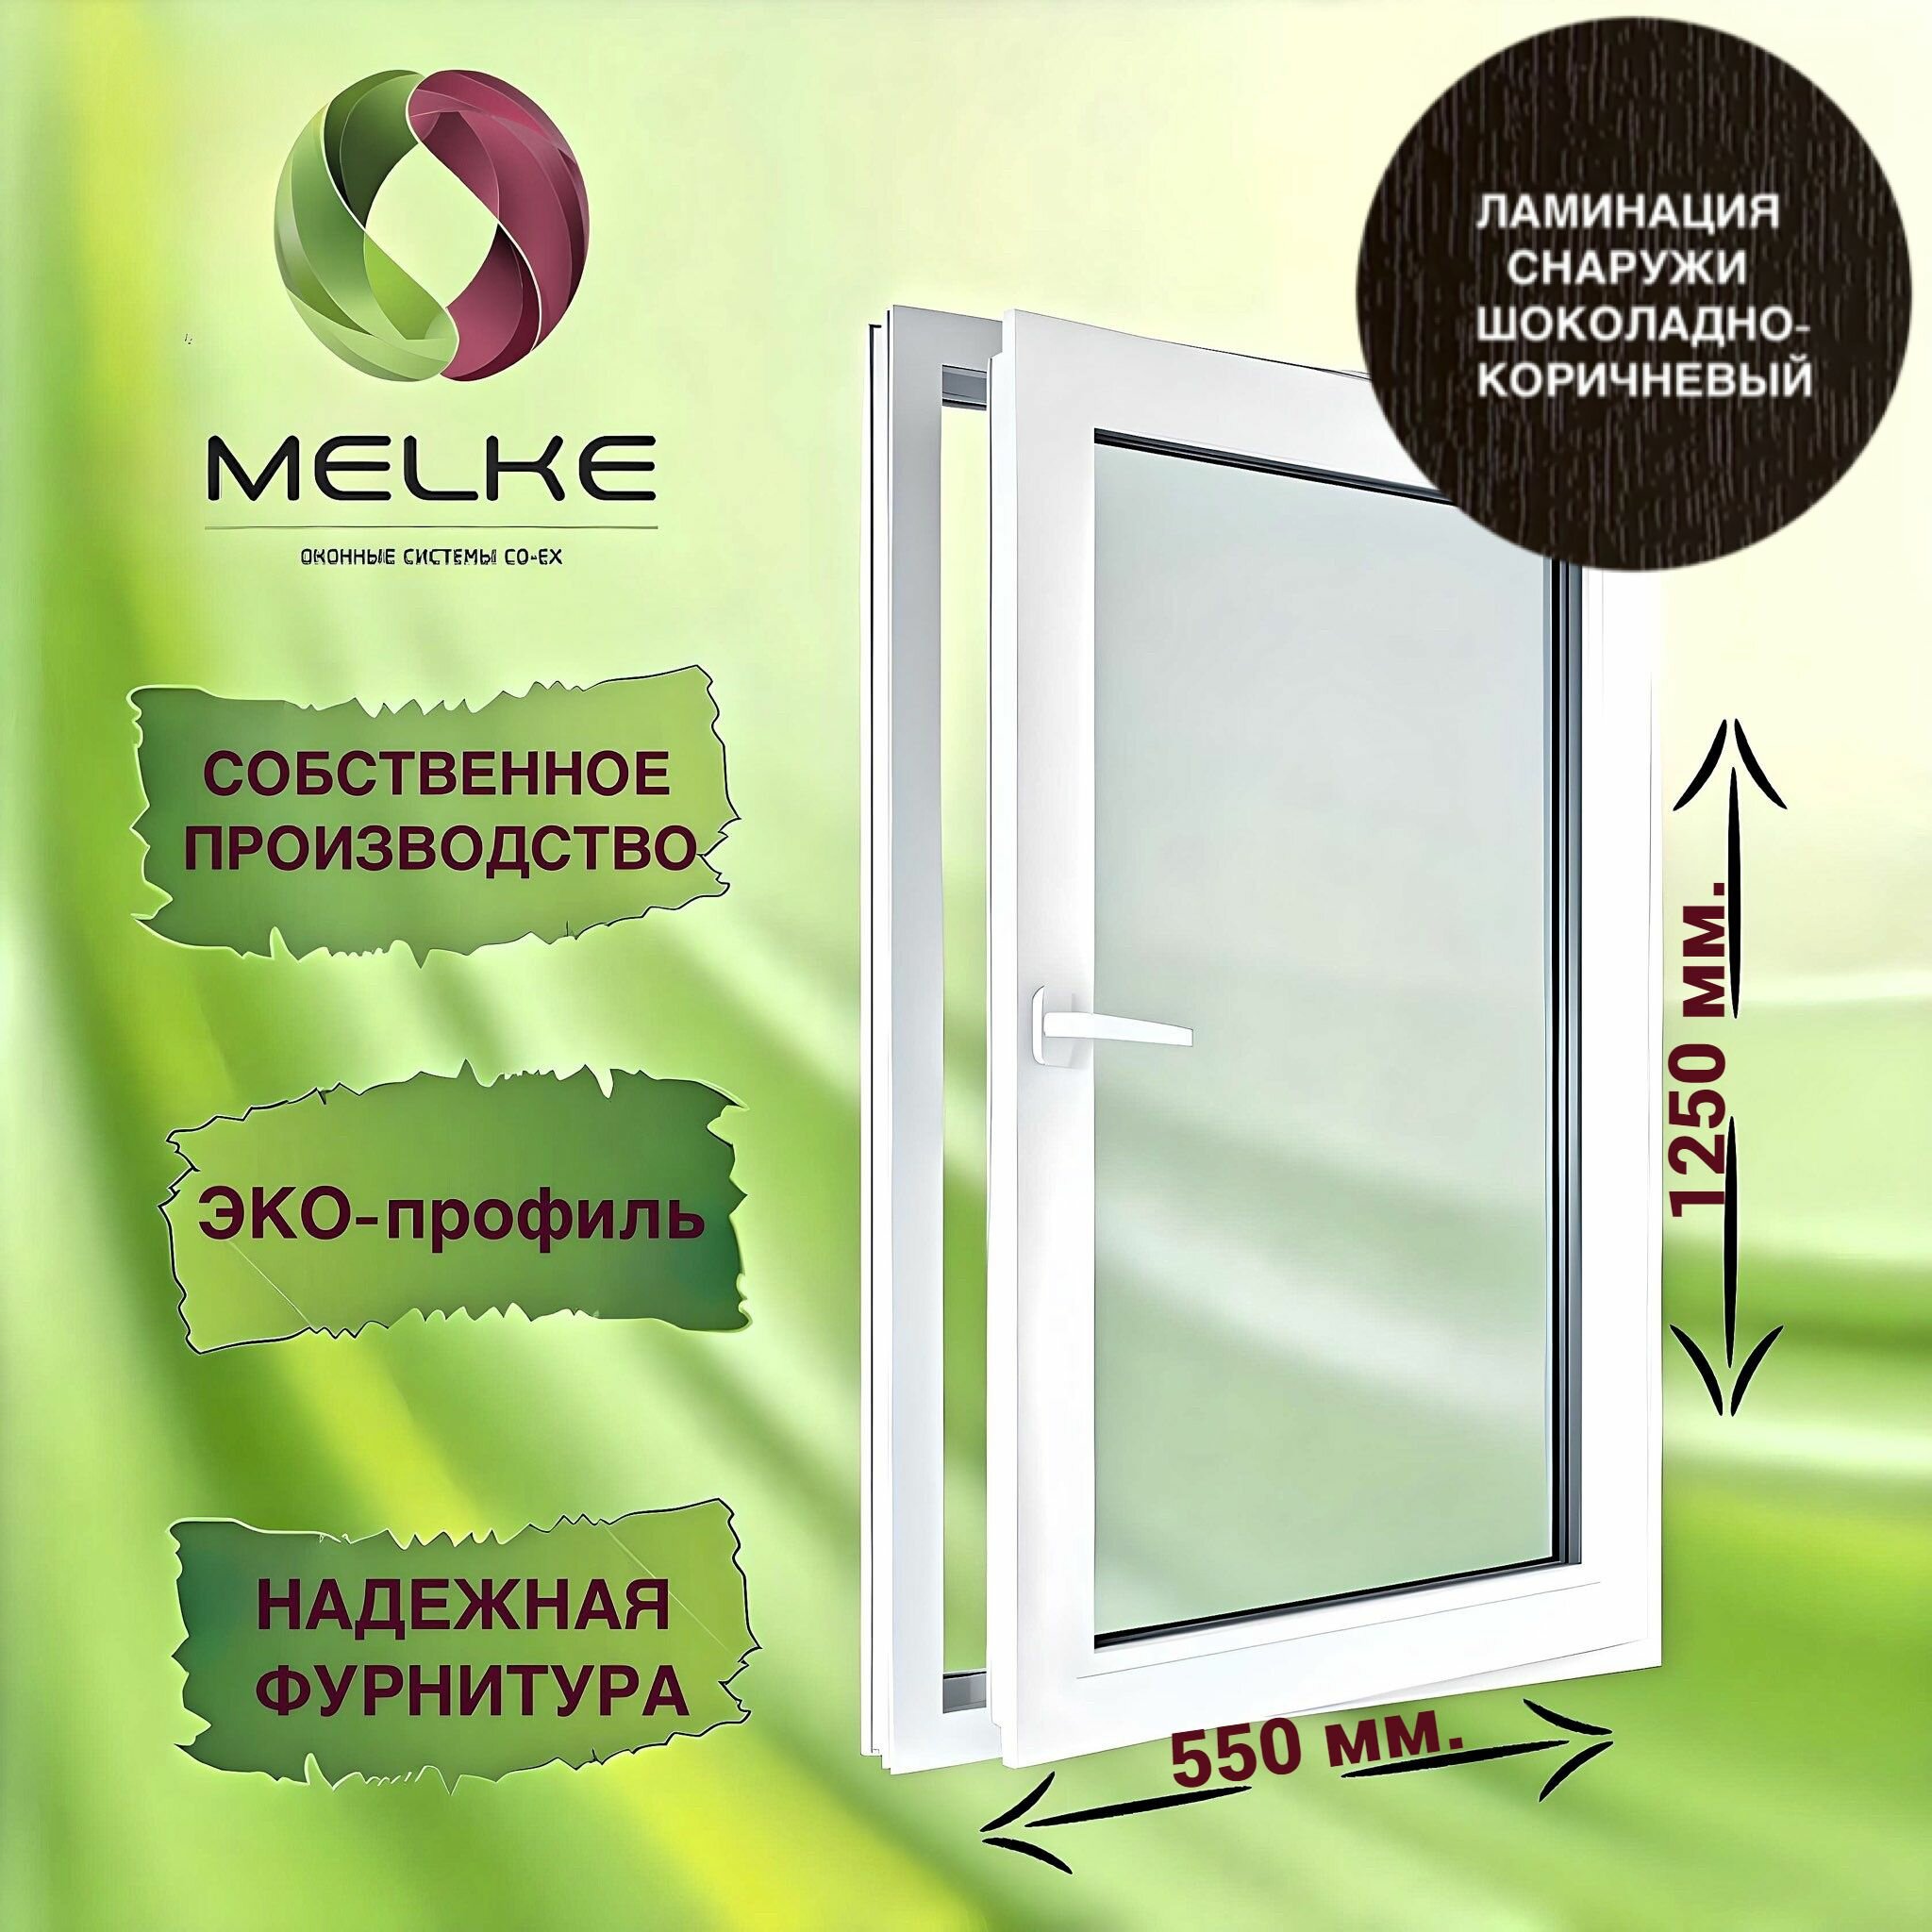 Окно 1250 х 550 мм, Melke 60 (Фурнитура FUTURUSS), правое одностворчатое, поворотно-откидное, цвет внешней ламинации Шоколадно-коричневый, 2-х камерный стеклопакет, 3 стекла